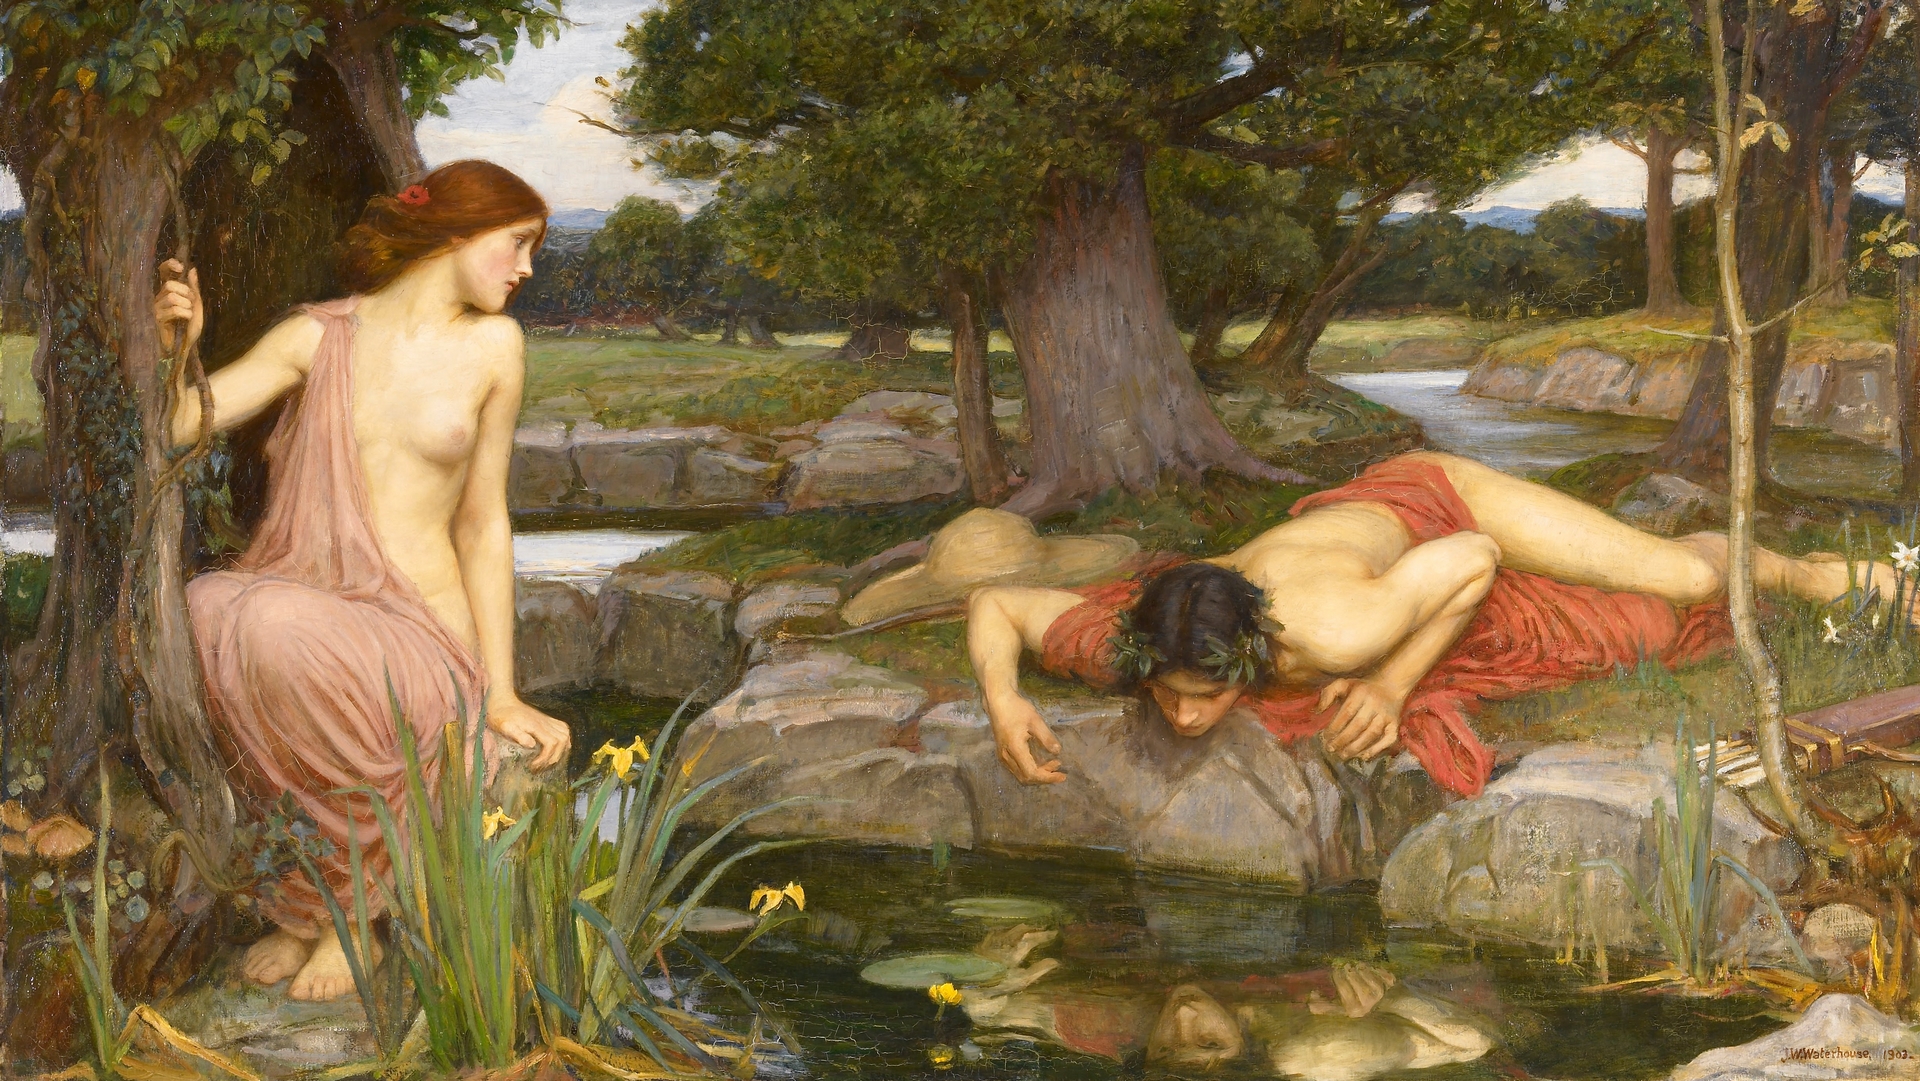 Le mythe de Narcisse par le peintre britannique John William Waterhouse, 1903 